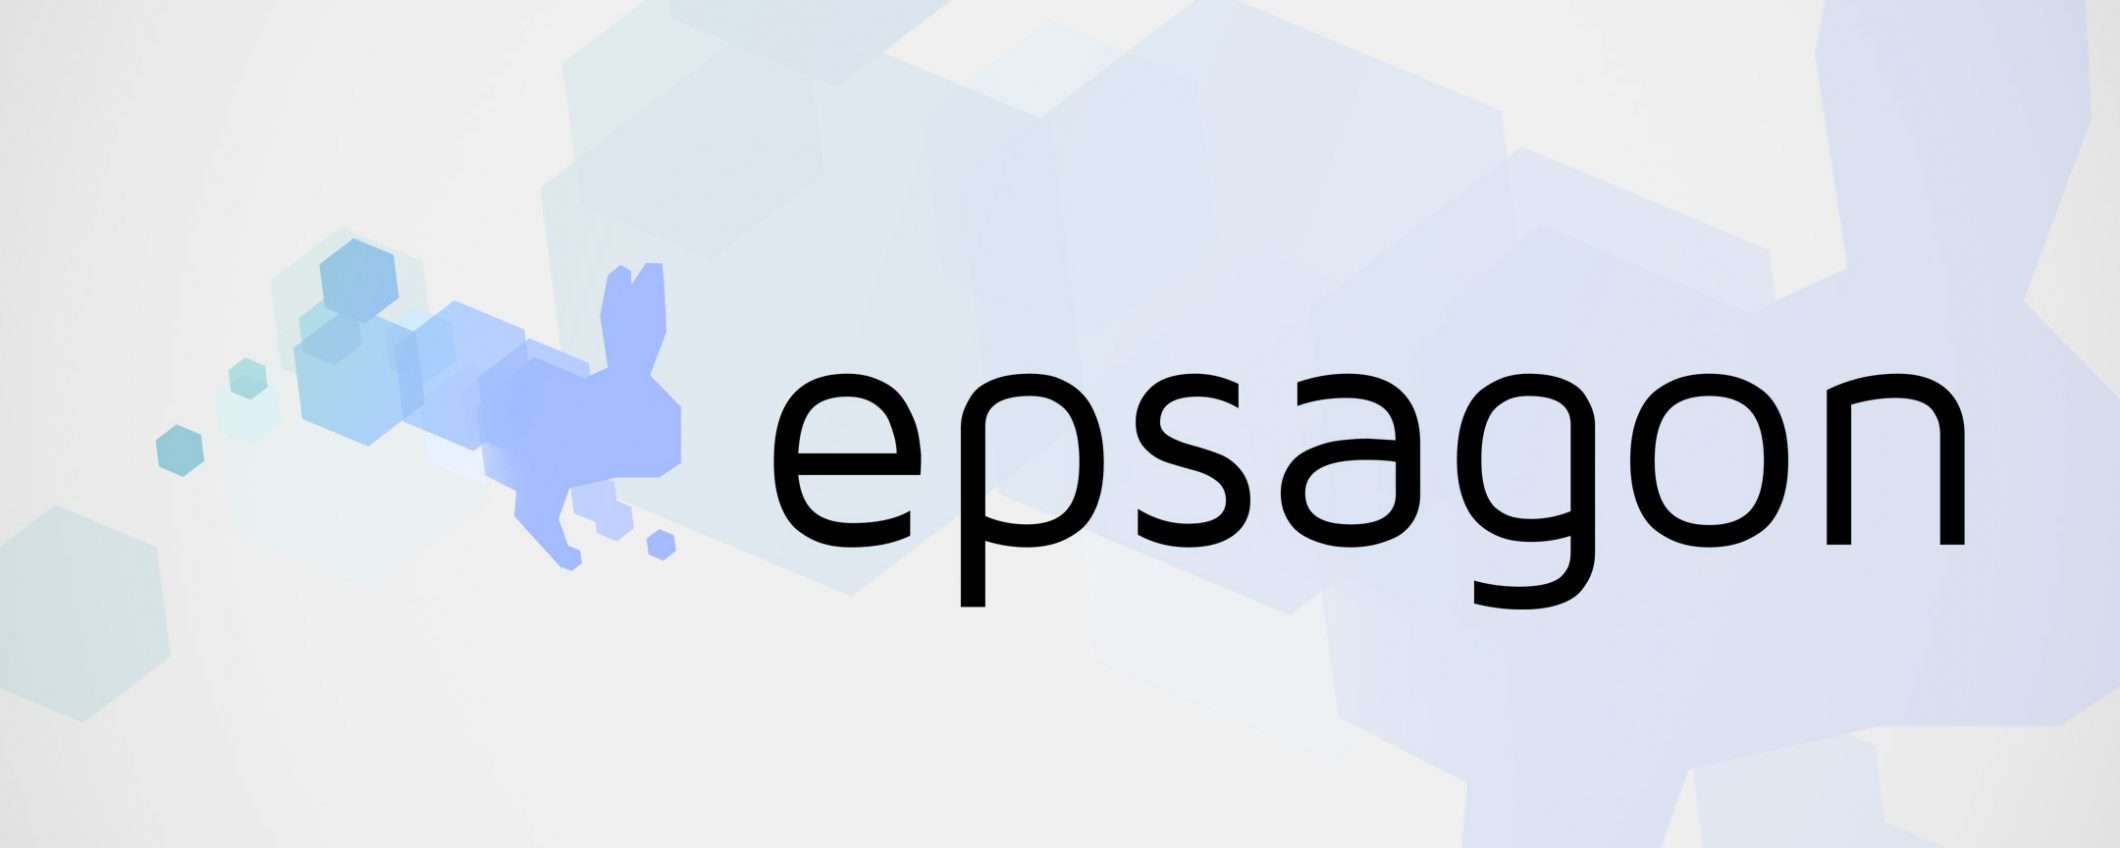 Cloud: Epsagon è la nuova acquisizione di Cisco